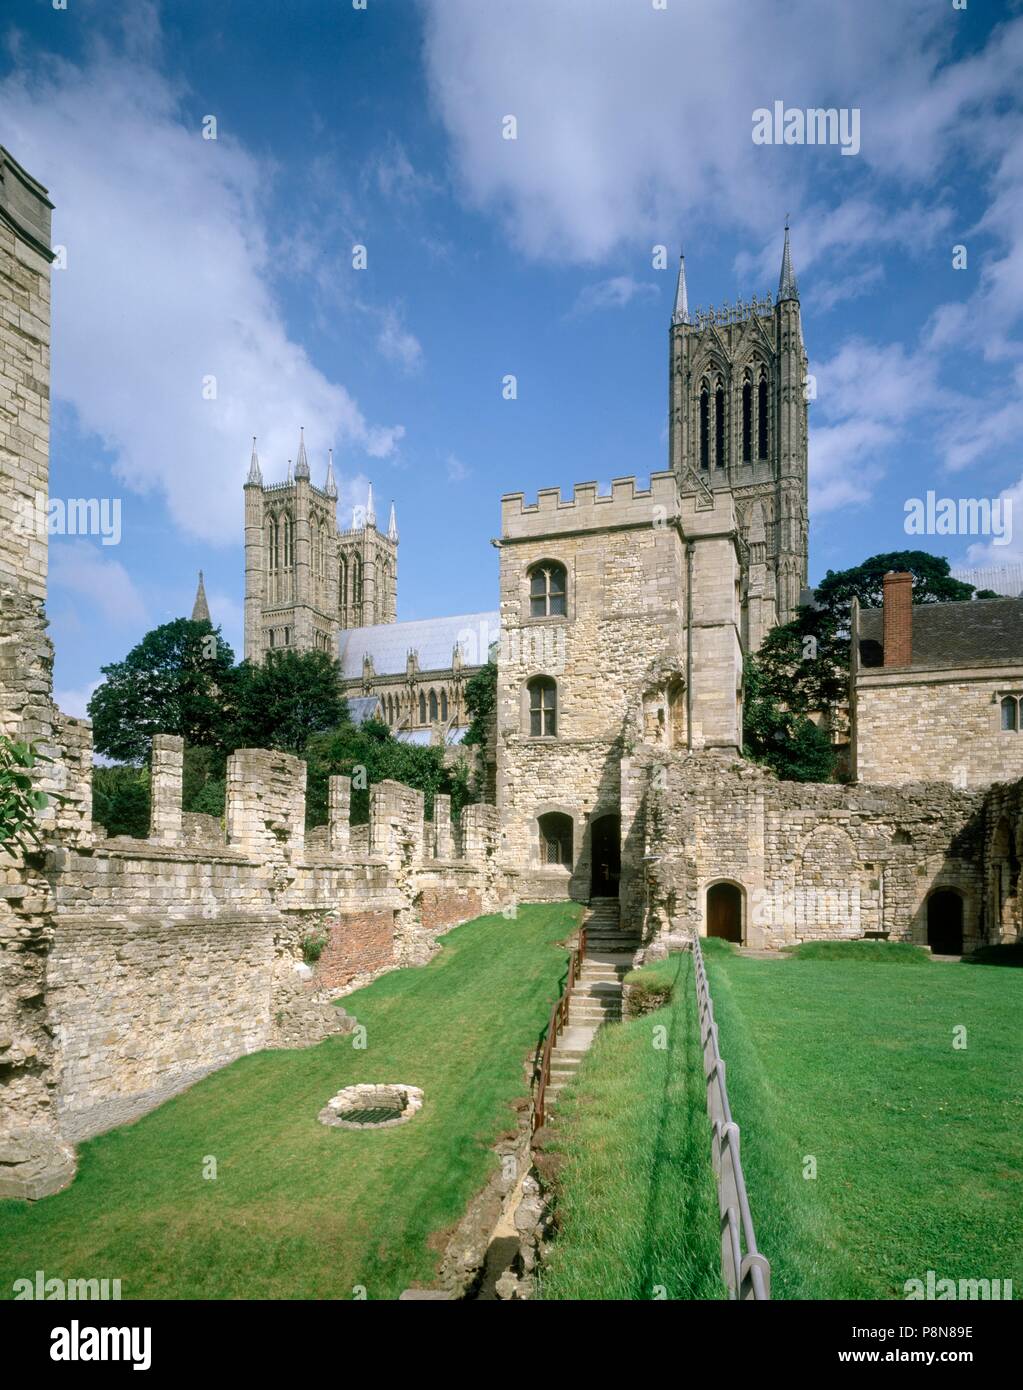 Palacio del Obispo, Lincoln, Lincolnshire, c1980-c2017. Artista: Inglaterra histórica personal del fotógrafo. Foto de stock